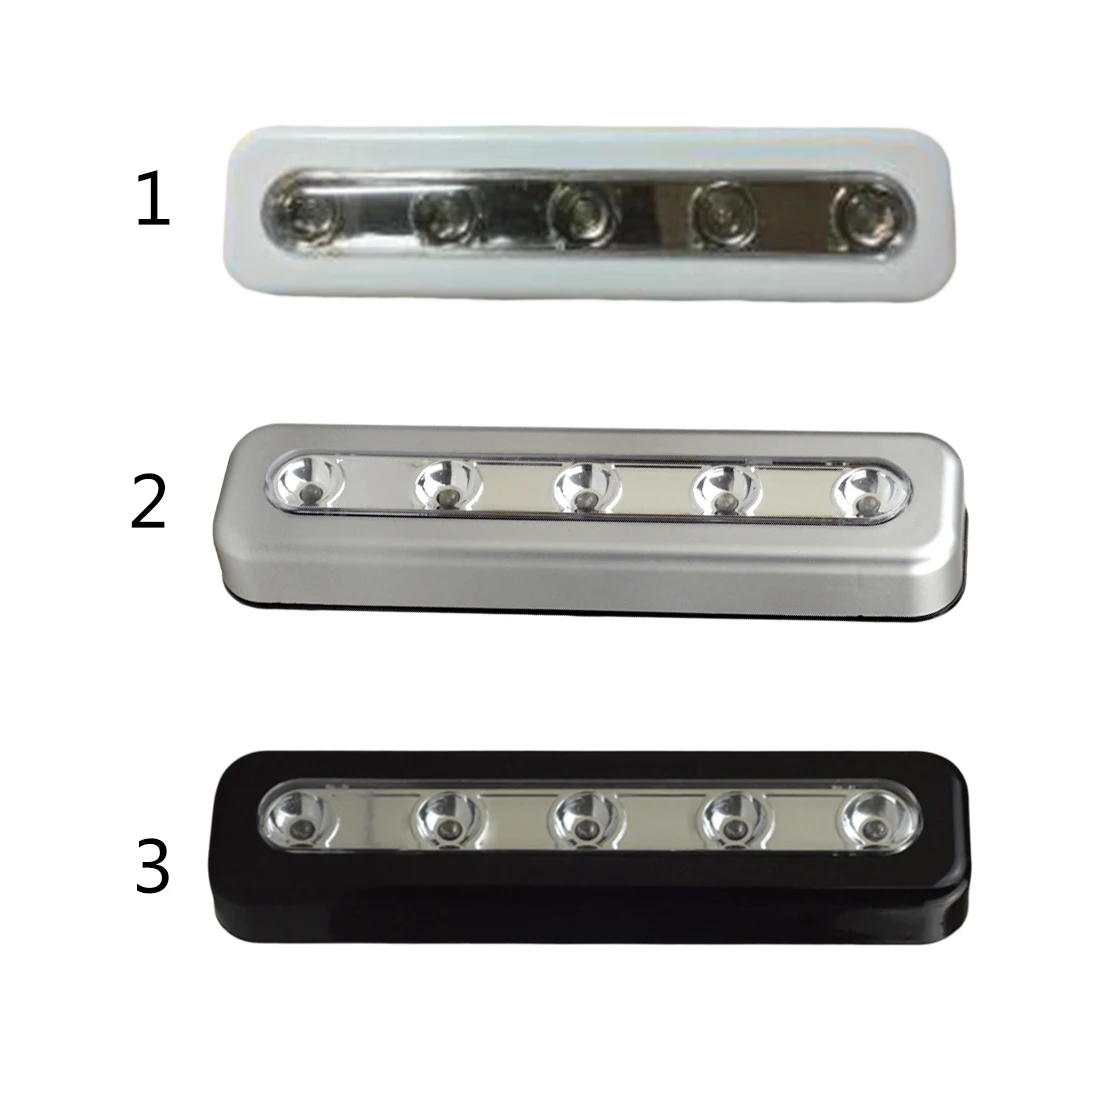 1 шт. беспроводной 5 светодиодный Ночной светильник под шкаф для шкафа кухонный кнопочный сенсорный кран Ночной светильник лампа на батарейках